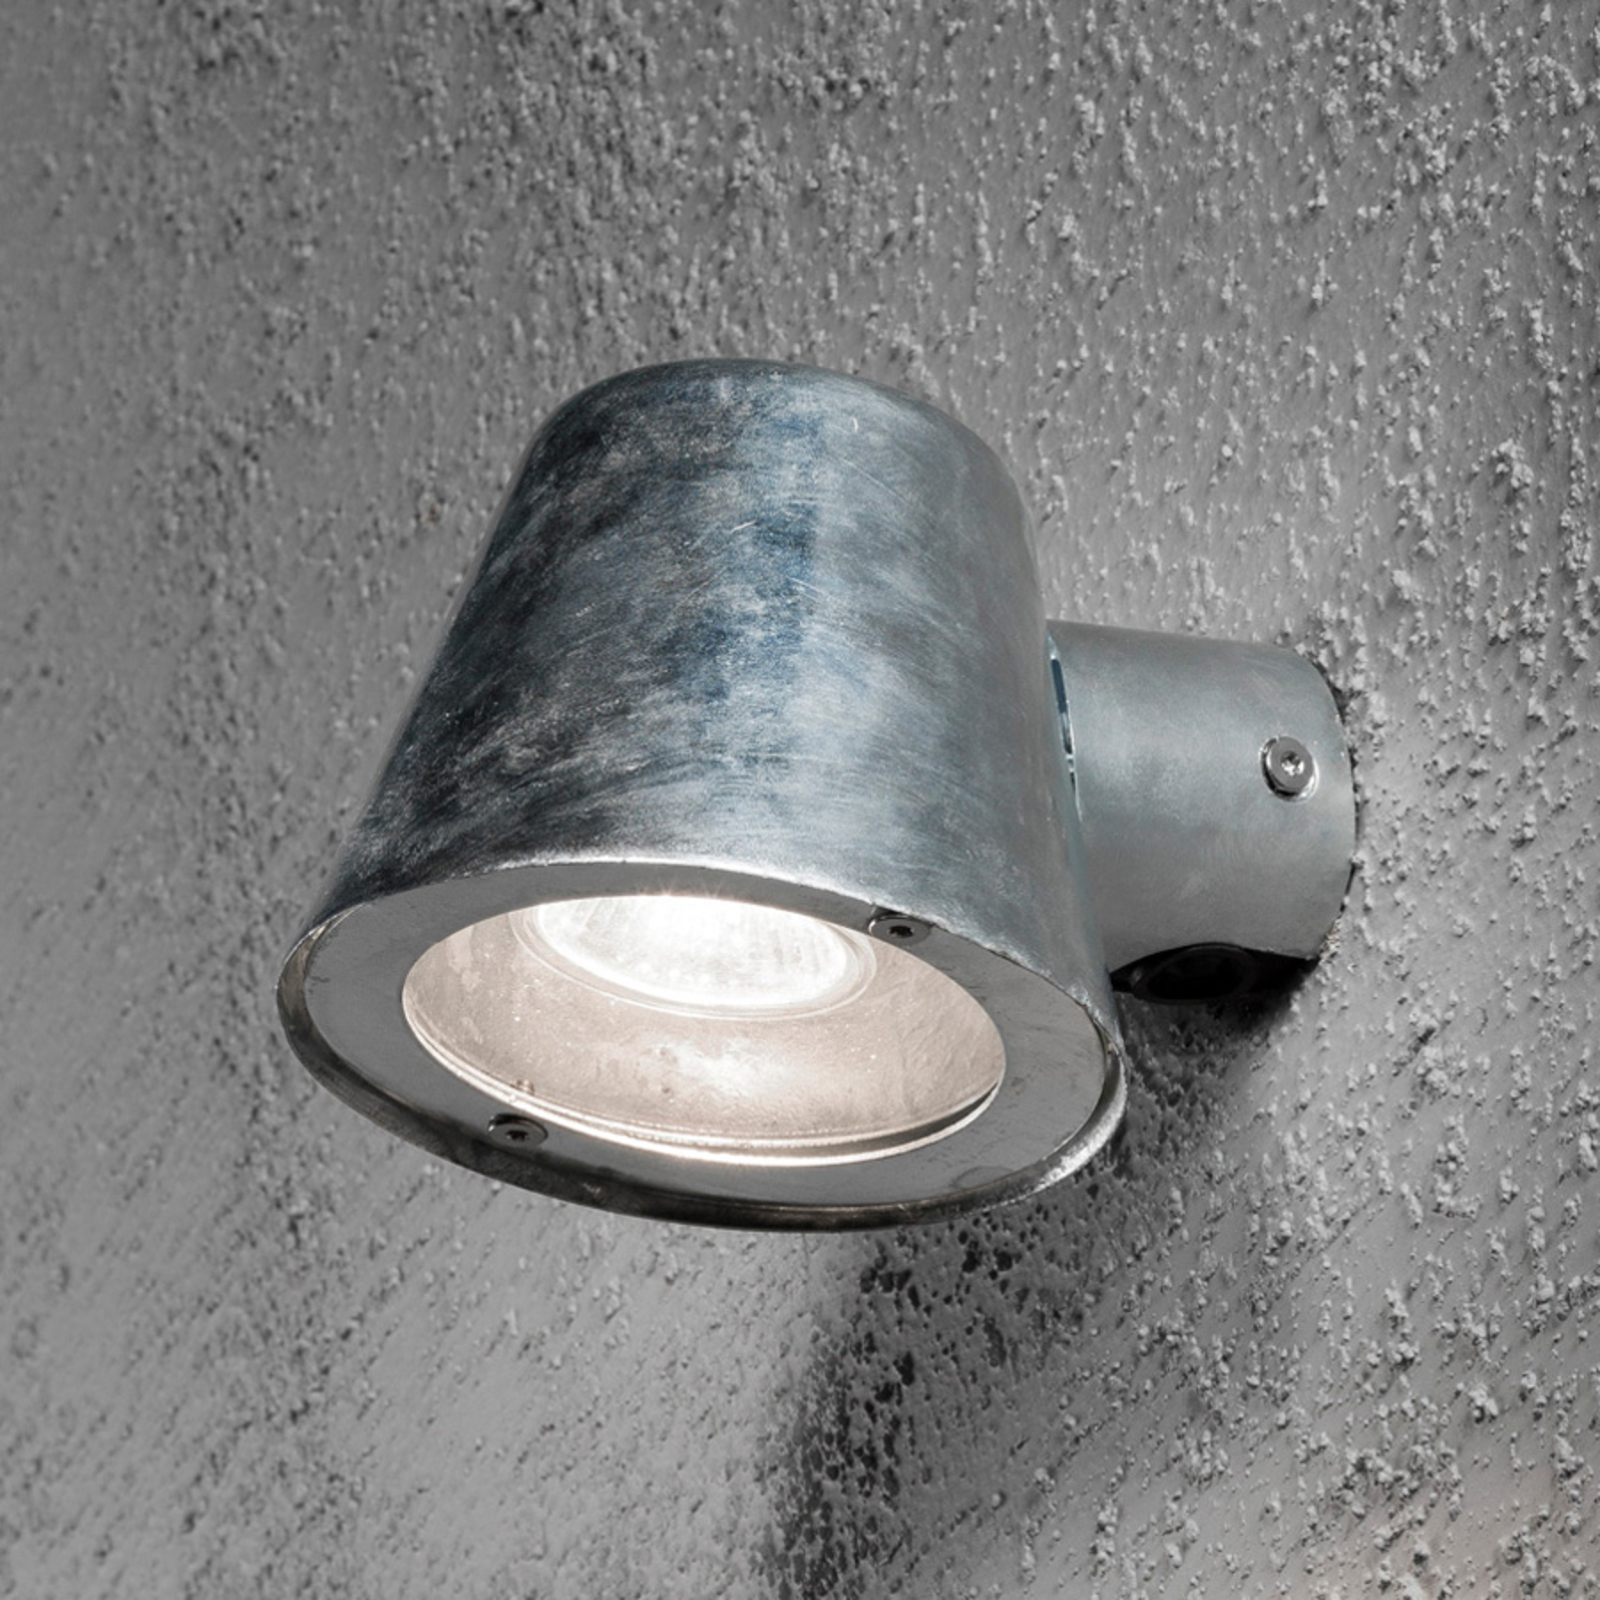 Trieste udendørs væglampe af stål, galvaniseret